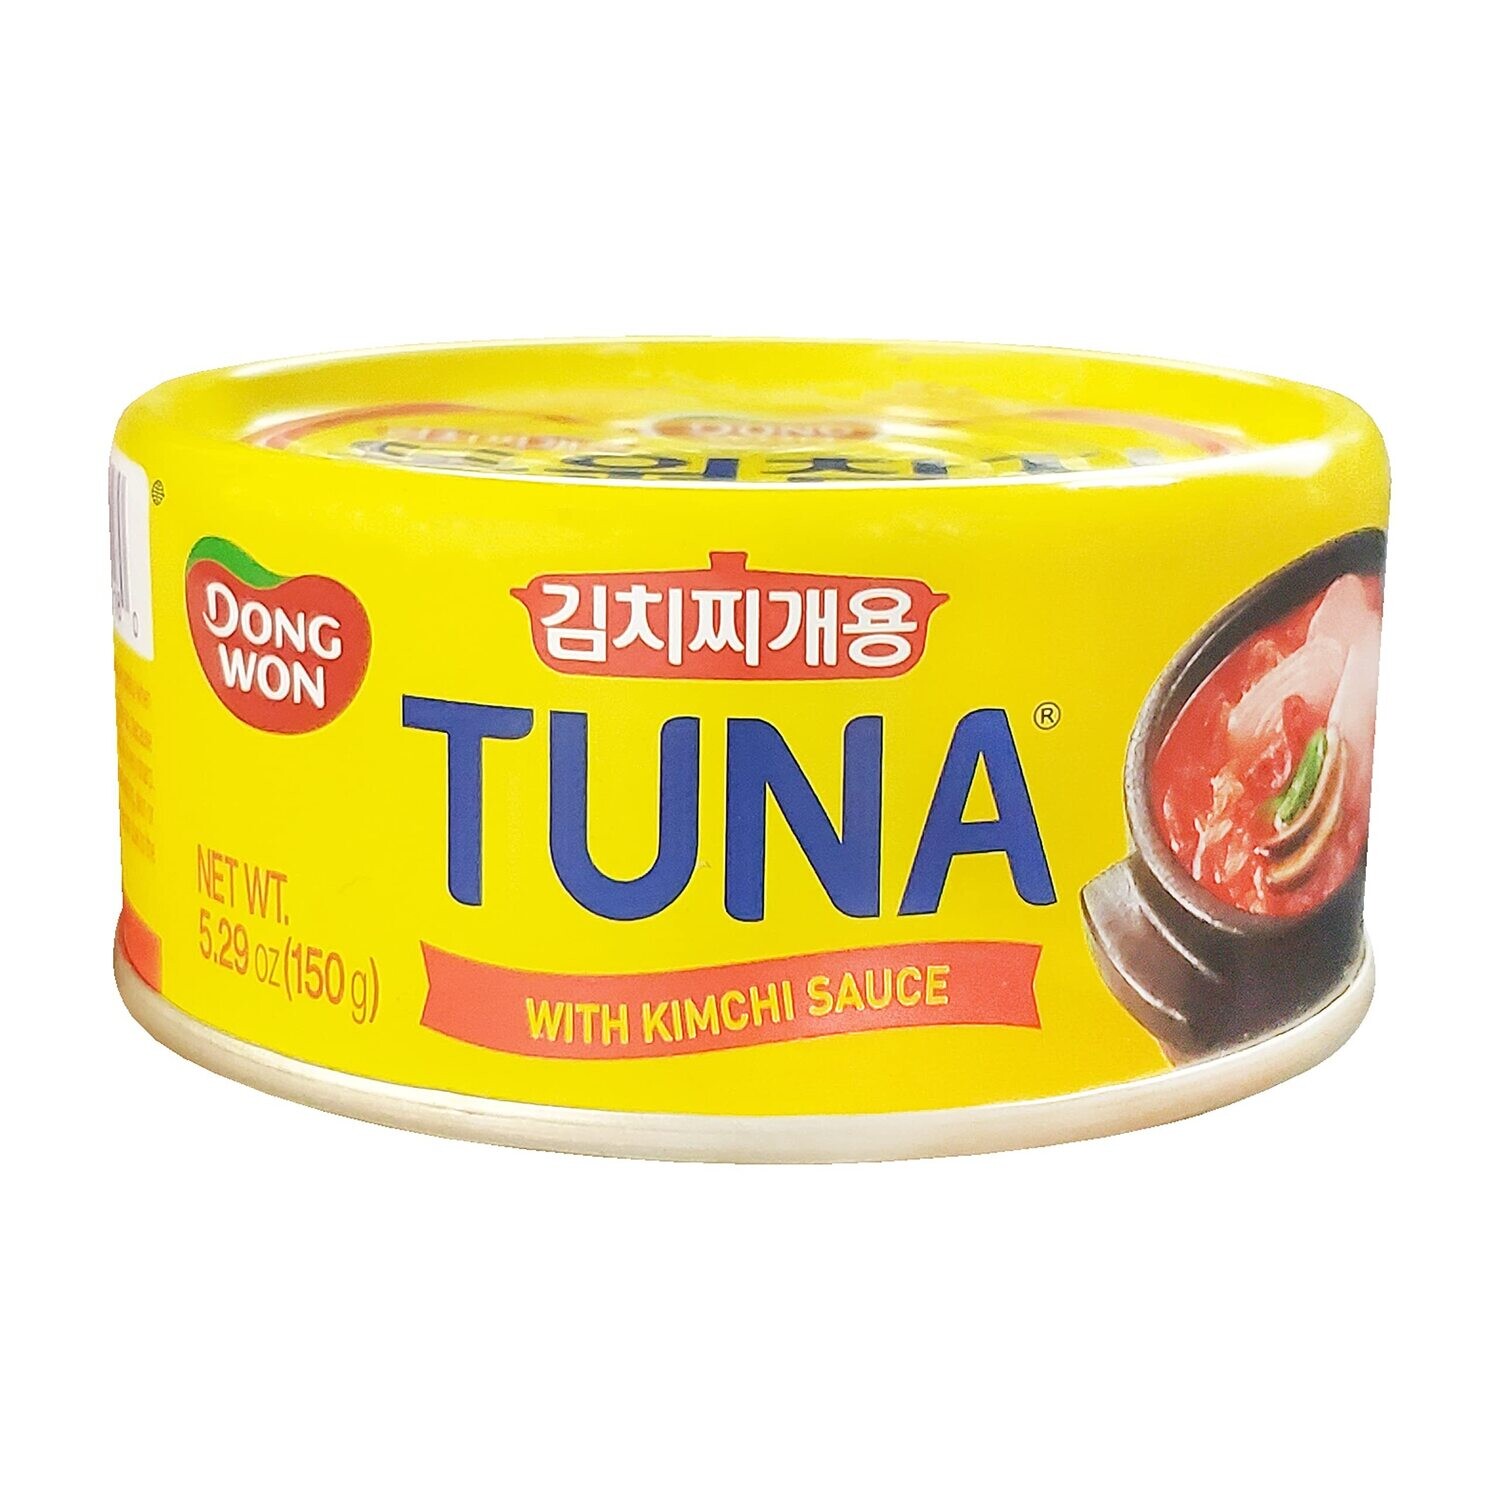 Dongwon Tuna with Kimchi Sauce (150G)